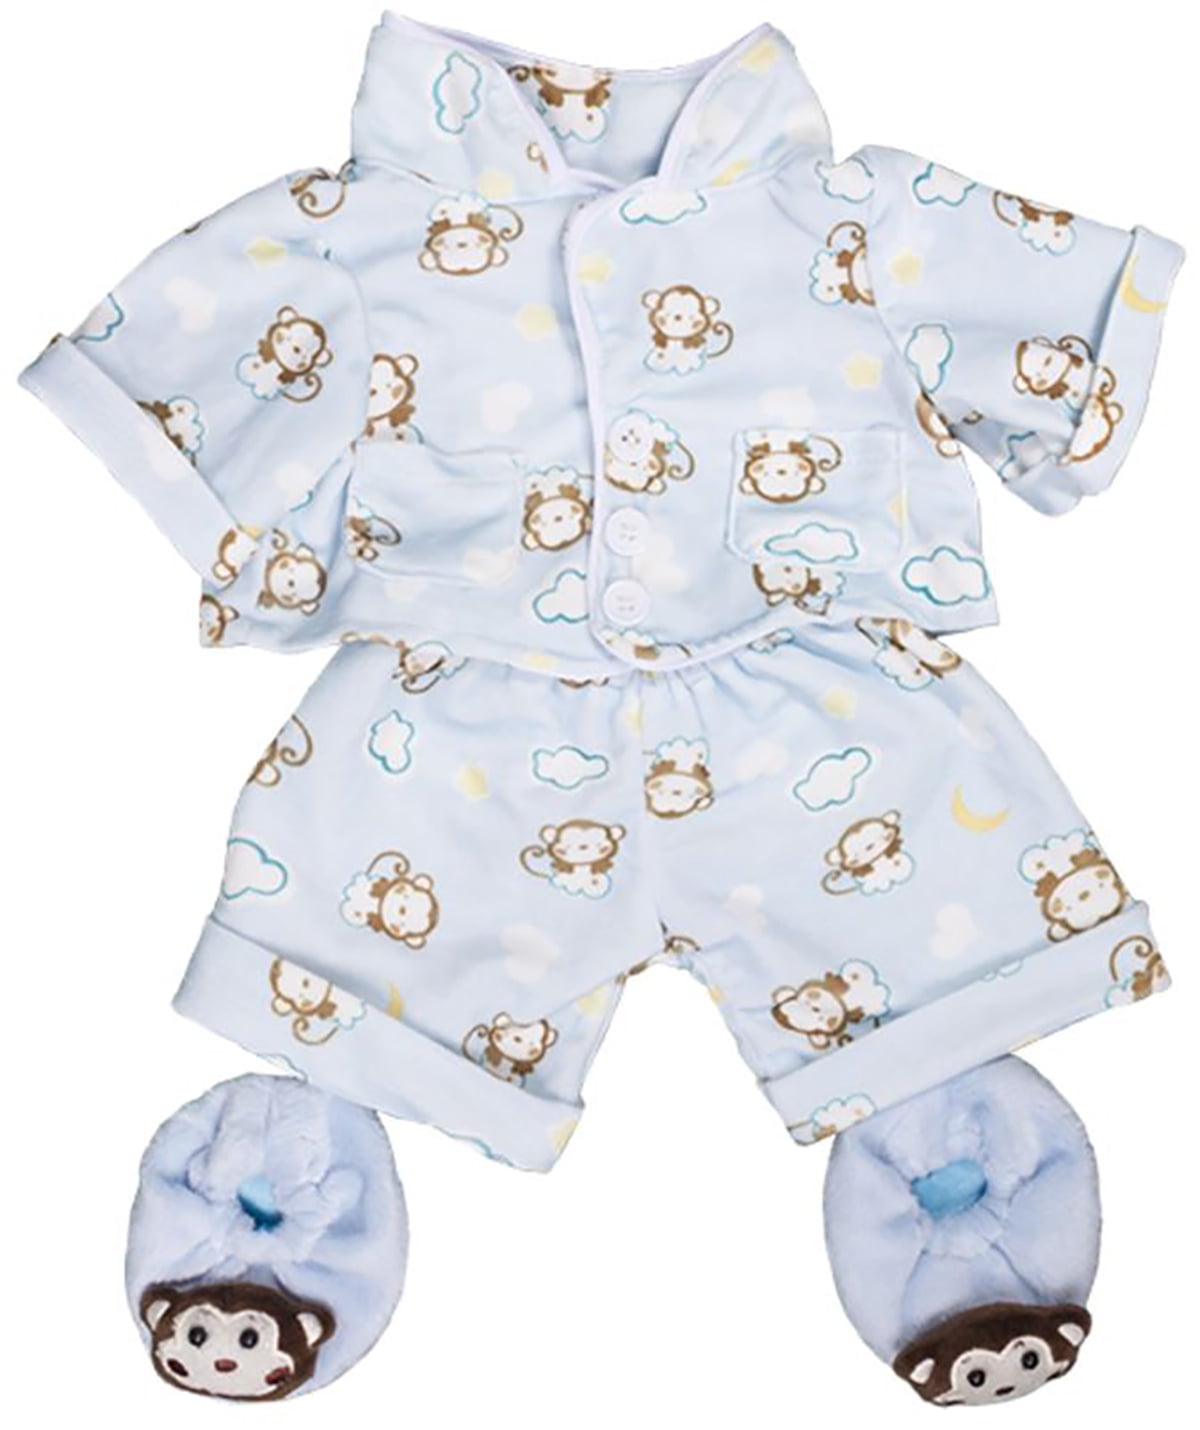 18" build a bear Cute Blue 16" Teddy Bear PJs Pyjamas clothes outfit fit 14" 